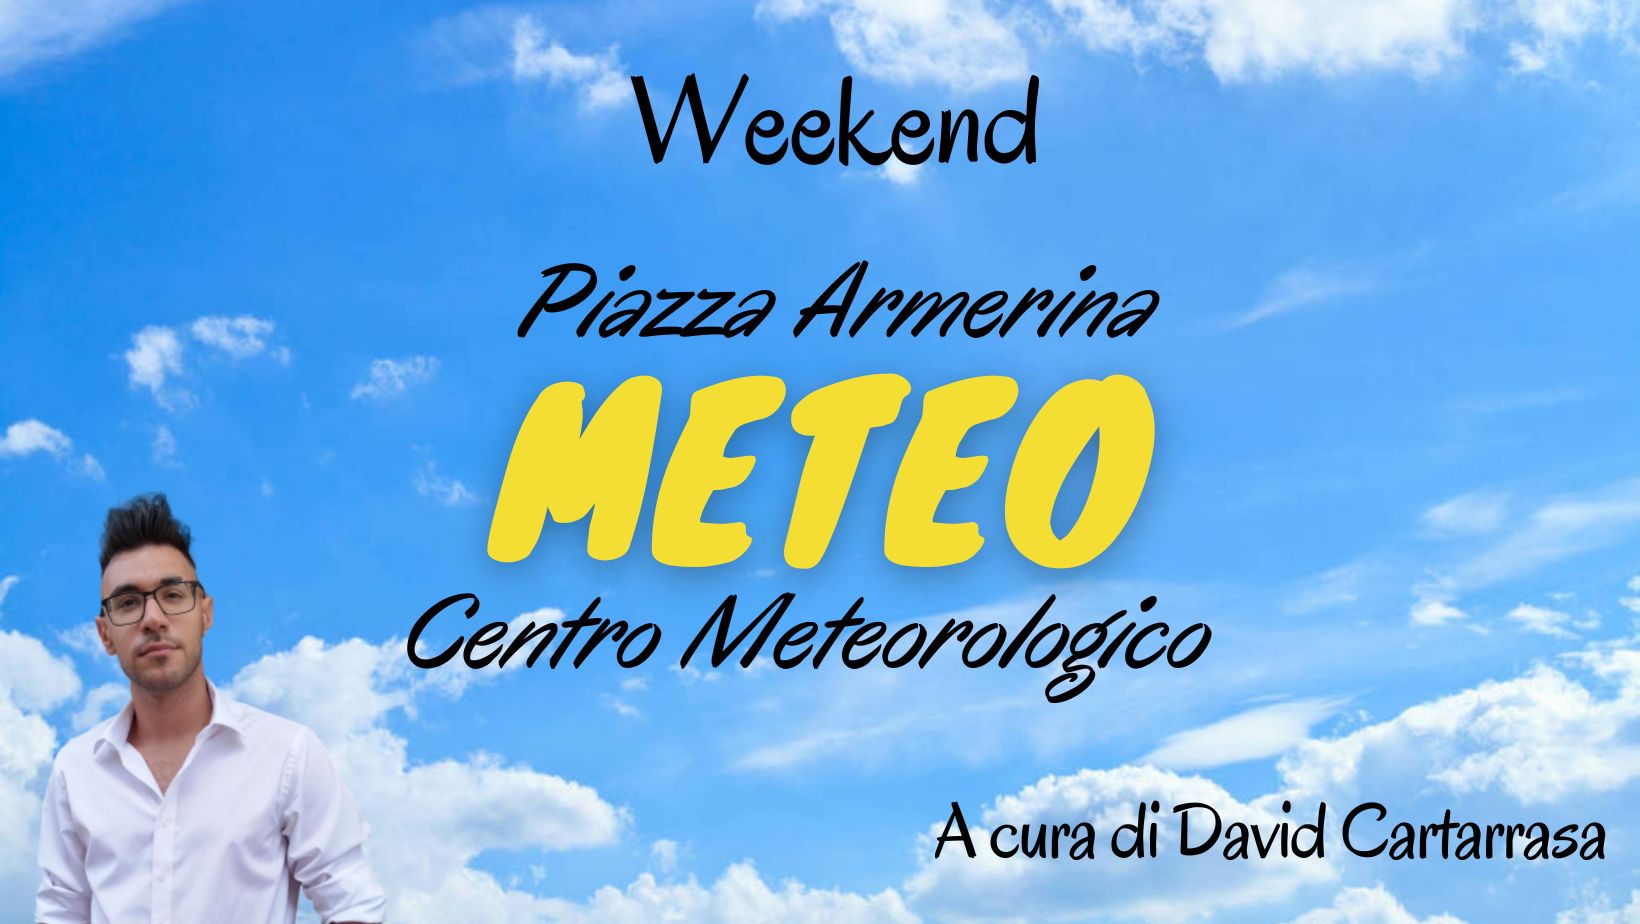 Meteo Piazza Armerina : weekend con pioggia e temperature in diminuzione